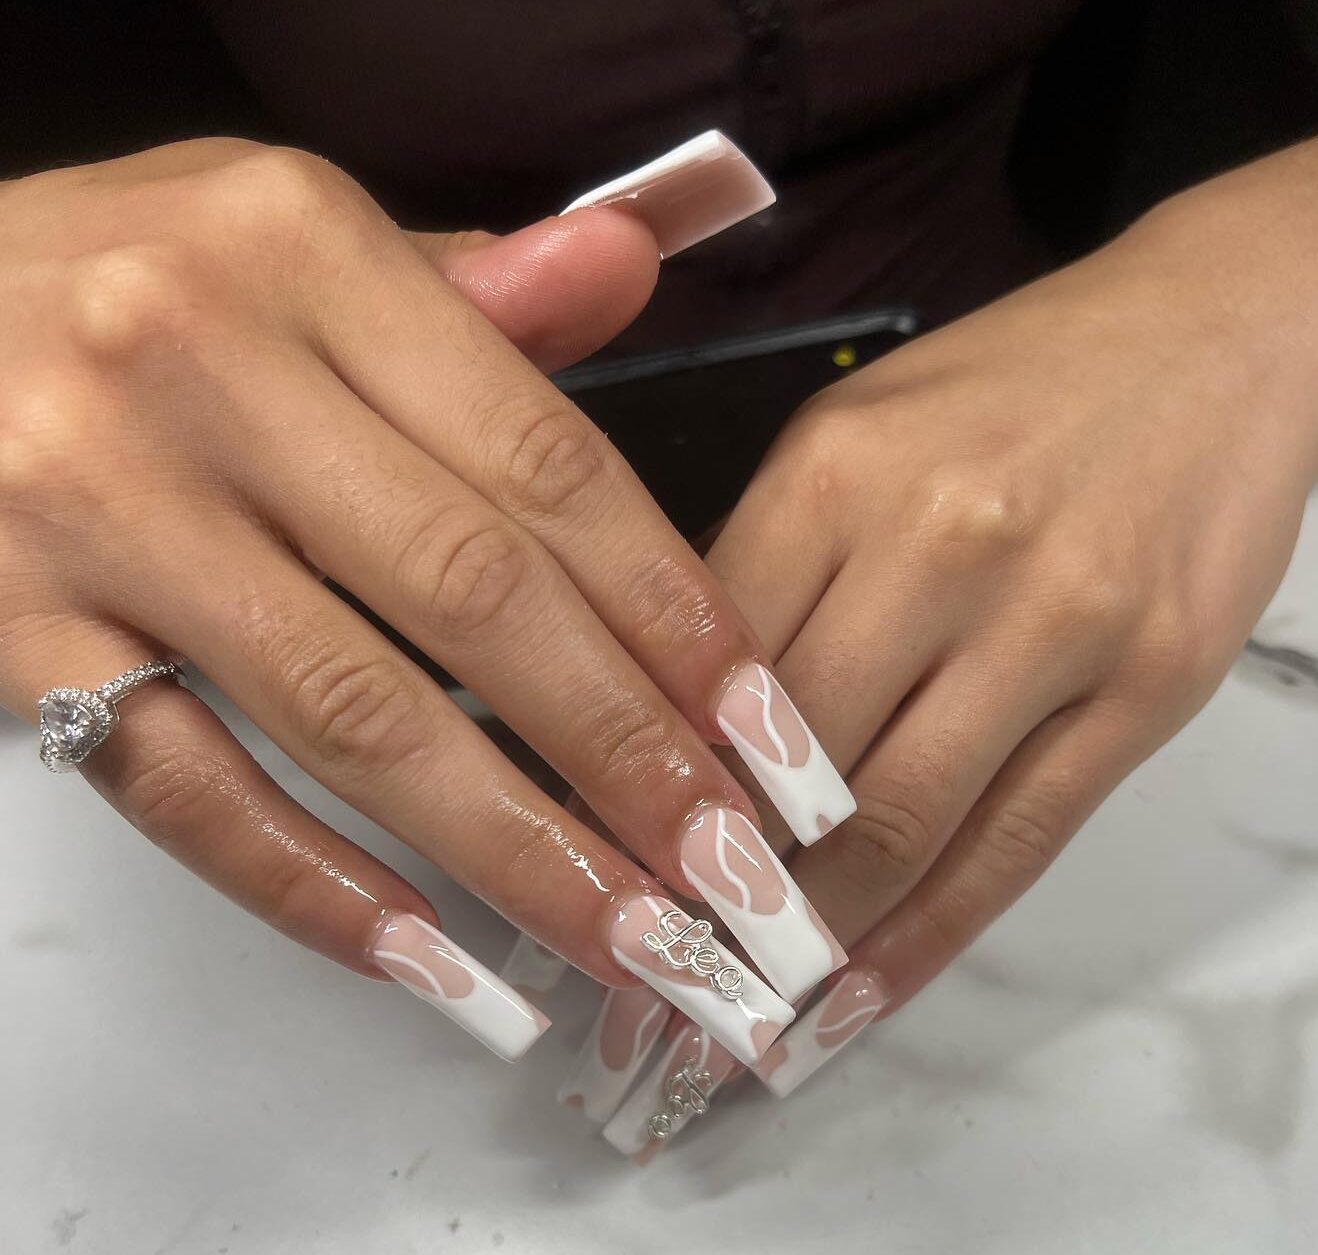 Puntas francesas abstractas blancas en uñas acrílicas largas y cuadradas